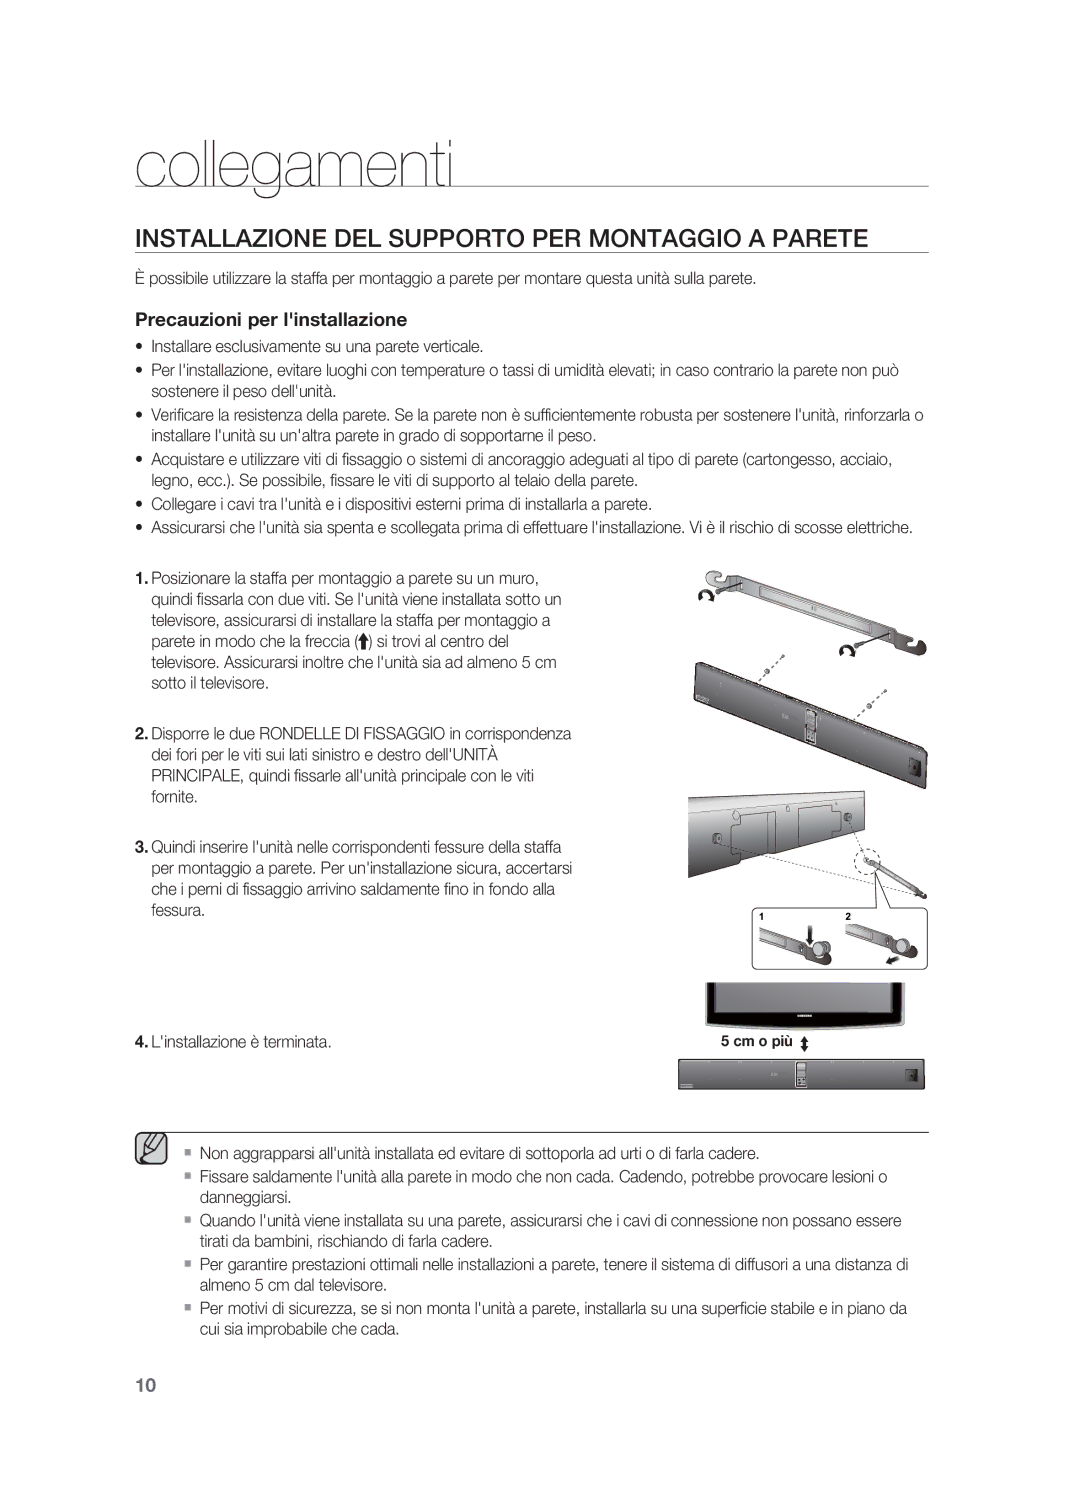 Samsung HW-F850/ZF manual Collegamenti, Installazione DEL Supporto PER Montaggio a Parete, Linstallazione è terminata 